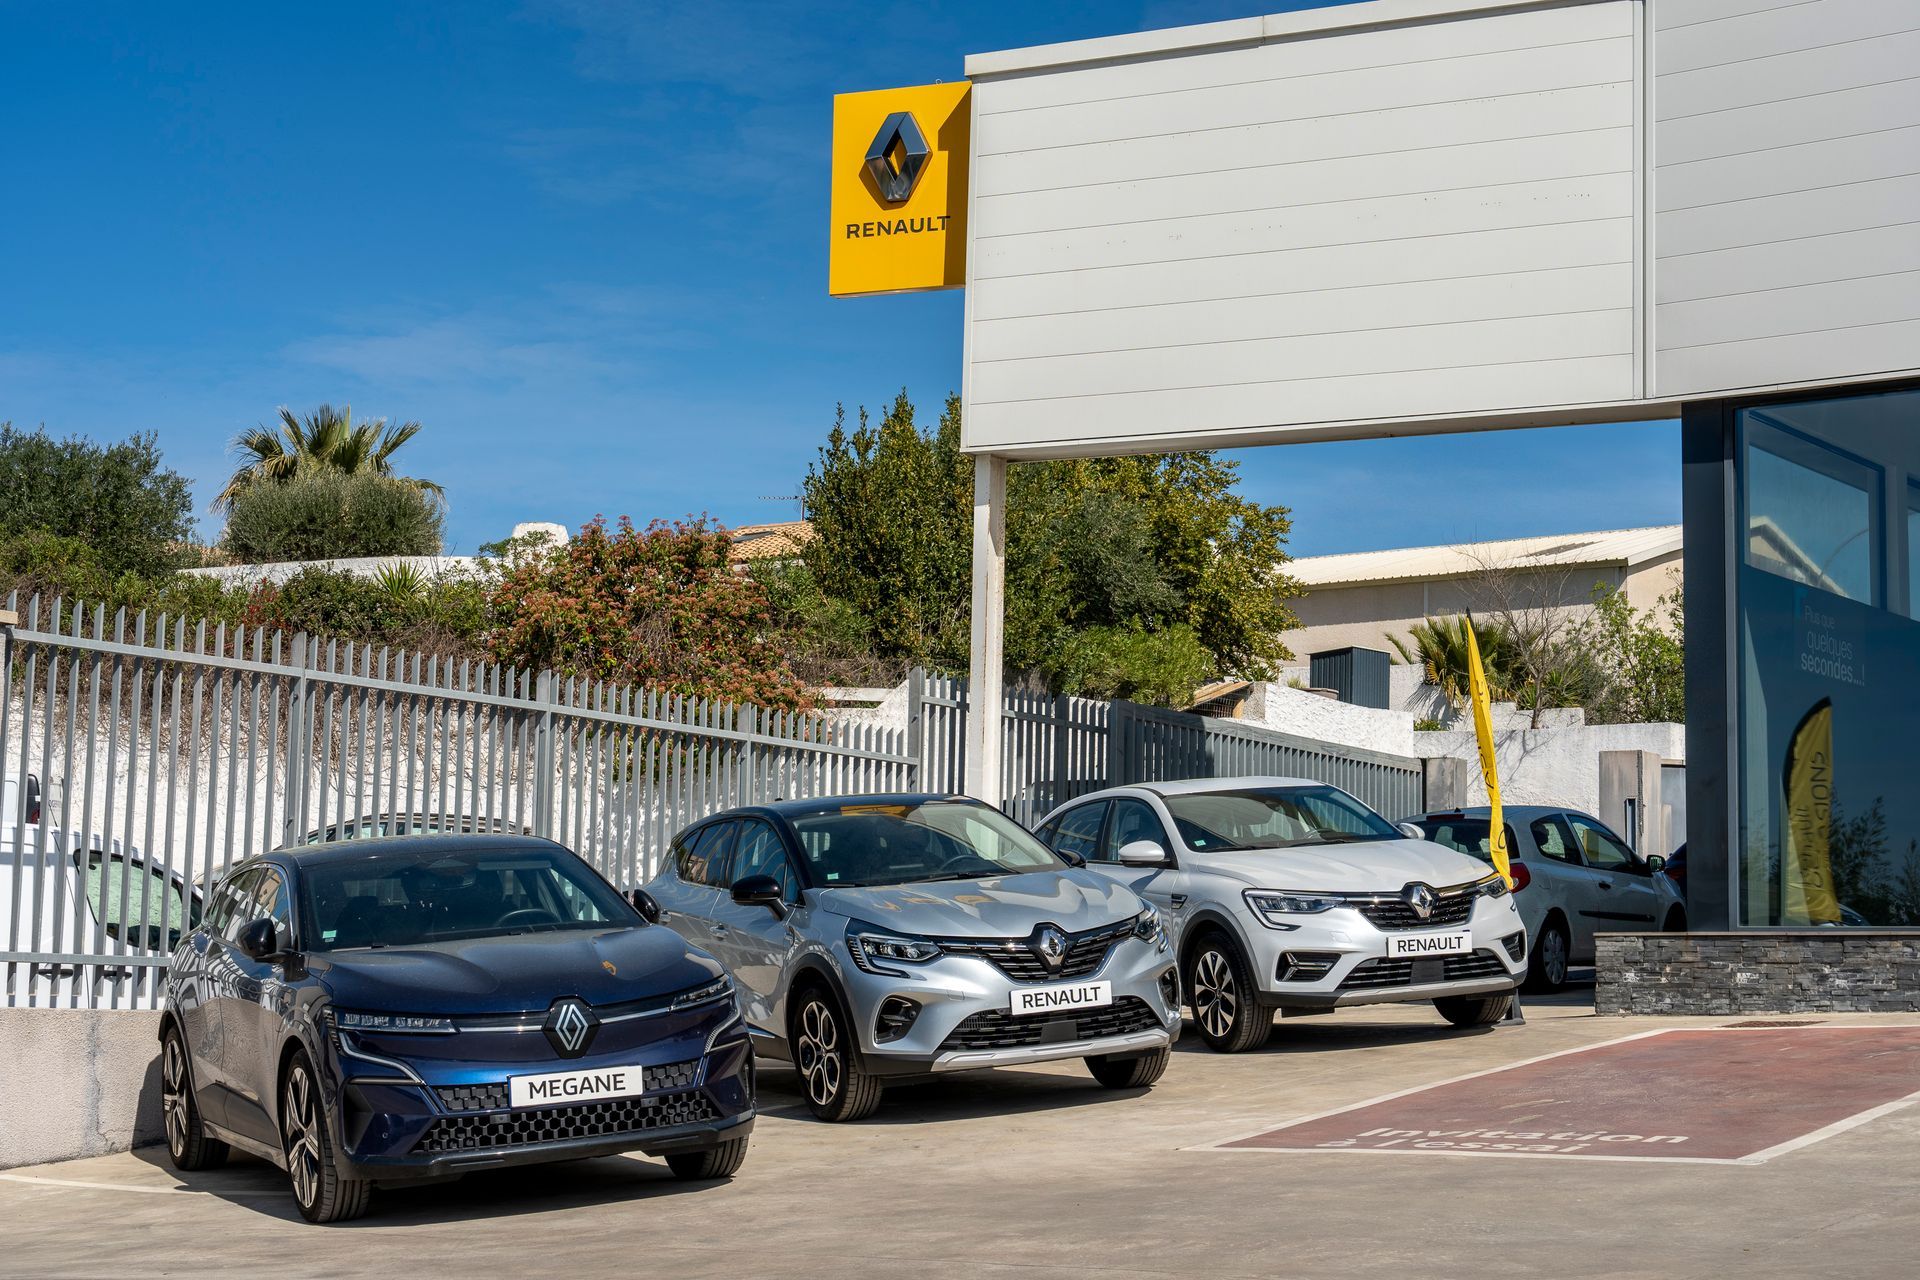 Voitures neuves Renault garées à l'extérieur